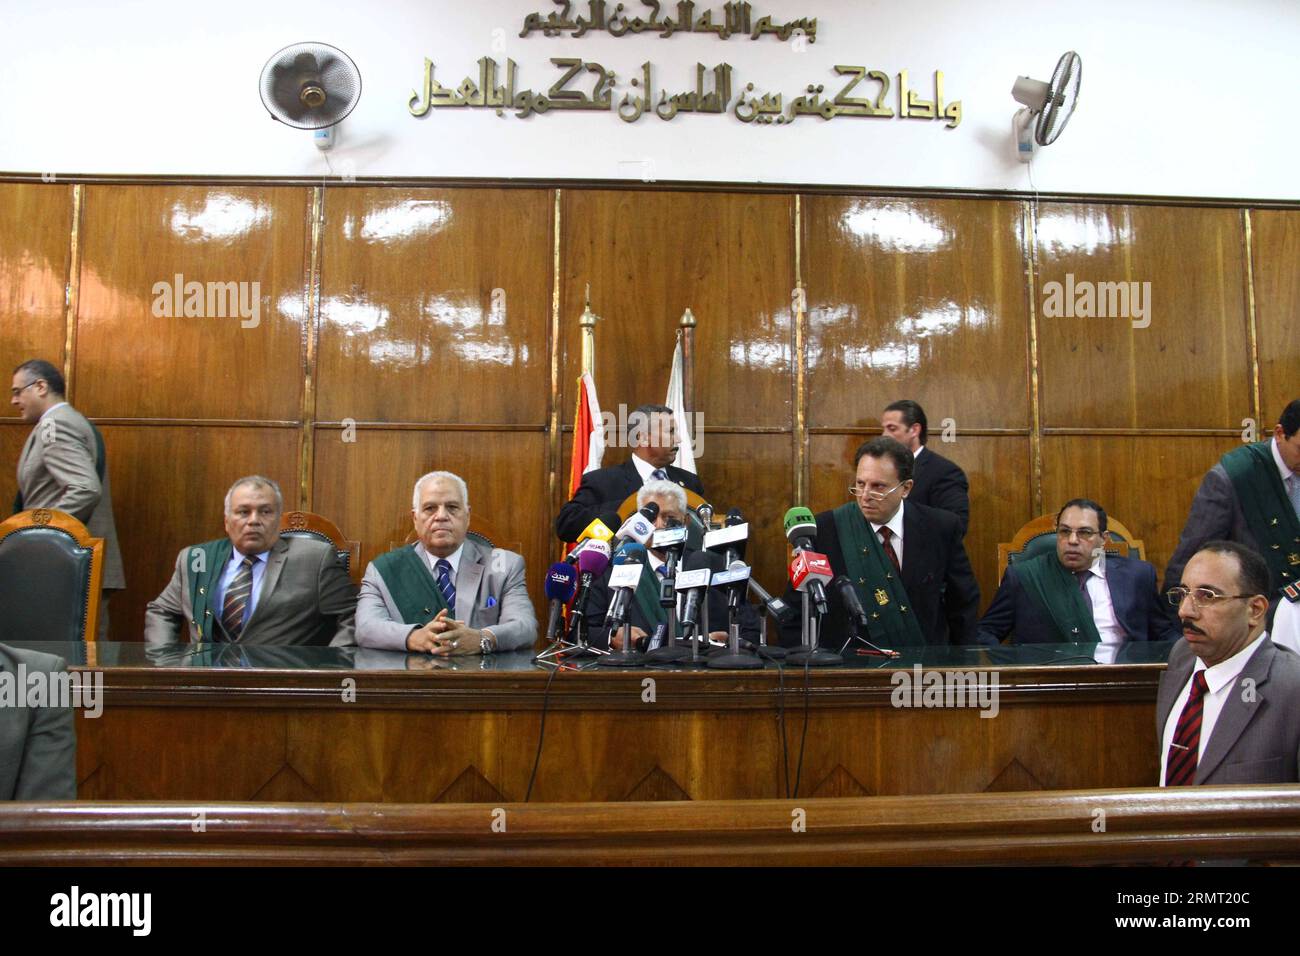 CAIRO, 9 agosto 2014 -- Una conferenza stampa si terrà presso un tribunale egiziano al Cairo, Egitto, il 9 agosto 2014. Un tribunale egiziano ha deciso sabato di sciogliere il Partito per la libertà e la giustizia (FJP), l'ala politica dei Fratelli musulmani, e di liquidare tutti i suoi beni, secondo l'Ahram gestito dallo Stato online. ) (Djj) EGYPT-CAIRO-FJP-DISSOLUZIONE AhmedxGomaa PUBLICATIONxNOTxINxCHN Cairo 9 agosto 2014 una conferenza stampa sta per diventare eroe PRESSO la Corte egiziana del Cairo Egitto IL 9 agosto 2014 la Corte egiziana ha deciso sabato di sciogliere il Partito per la libertà e la giustizia dei Fratelli musulmani Foto Stock